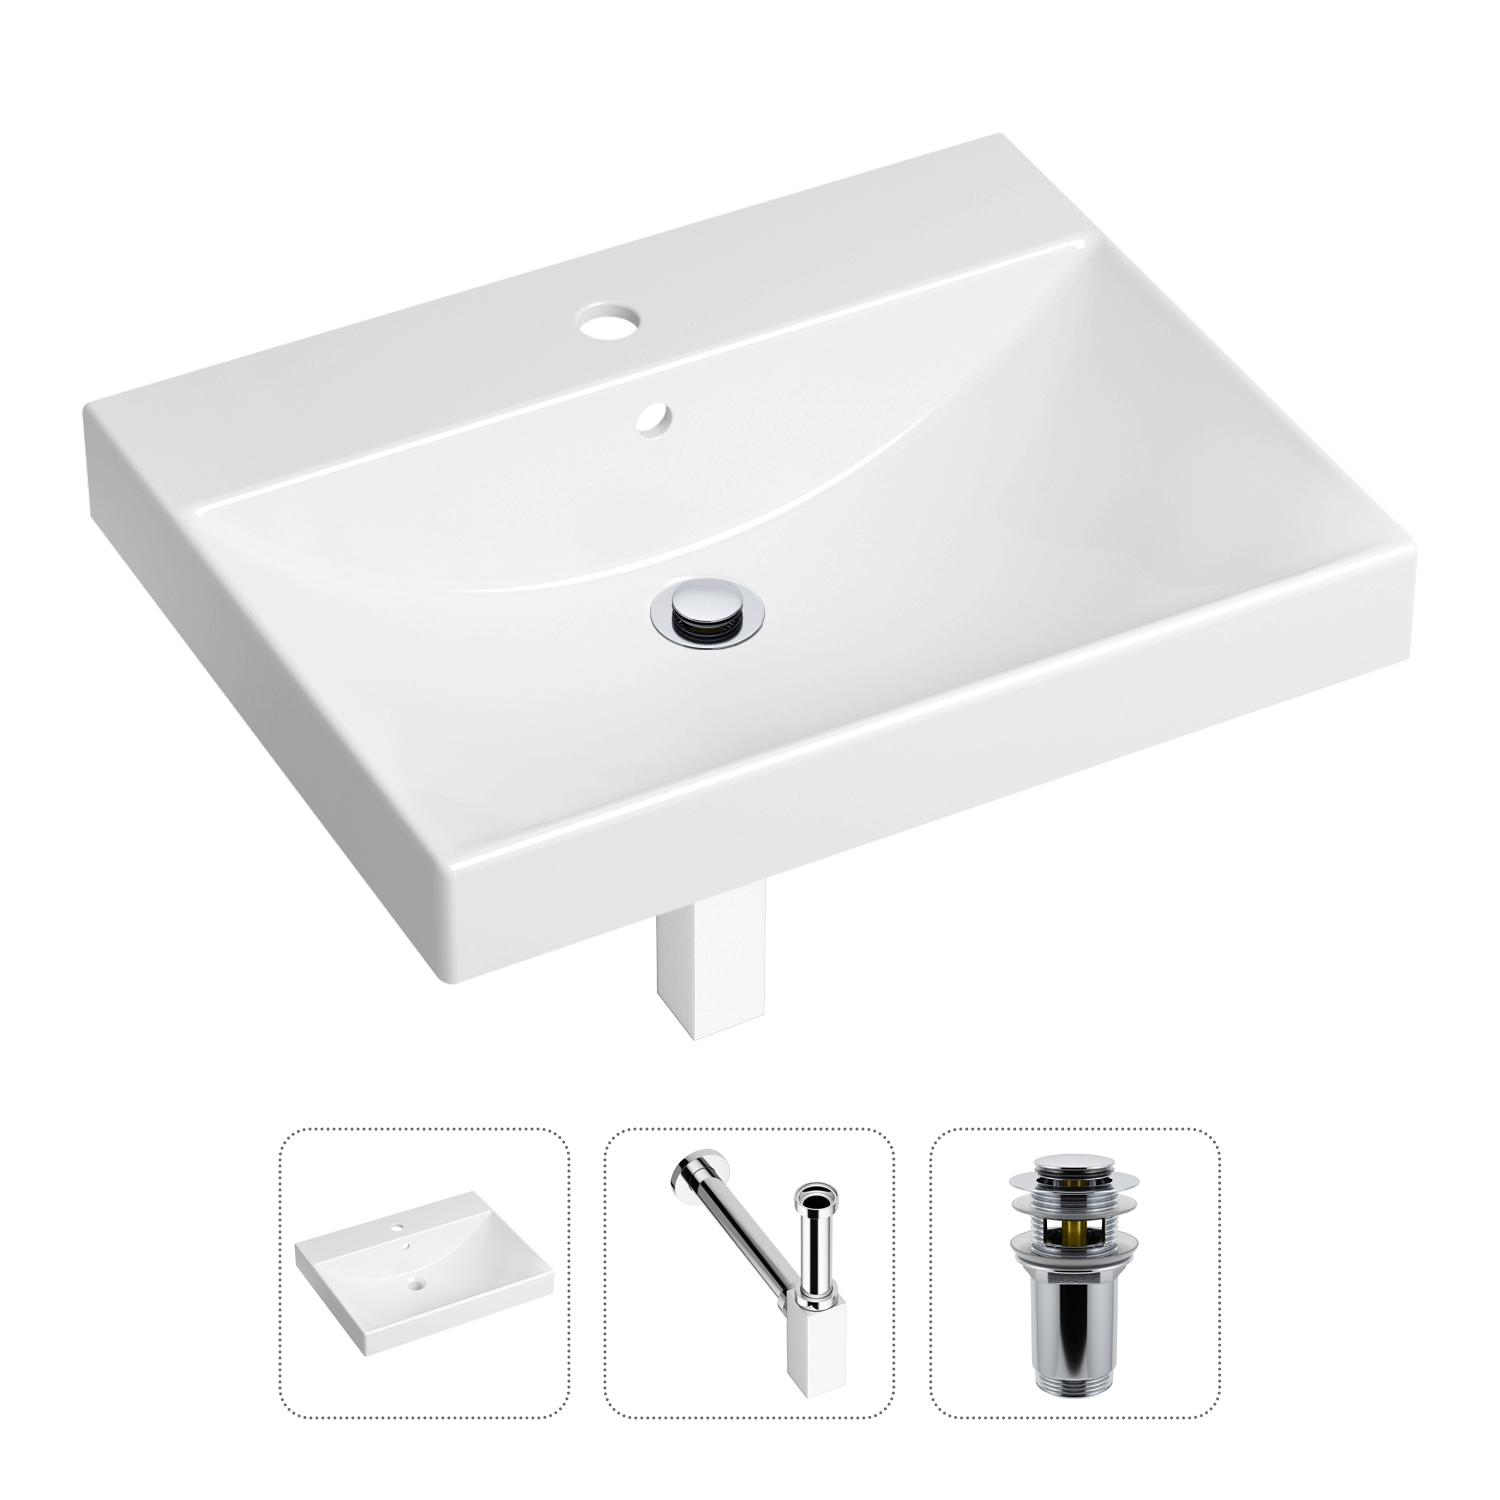 Комплект 3 в 1 Lavinia Boho Bathroom Sink 21520556: раковина 60 см, сифон, донный клапан